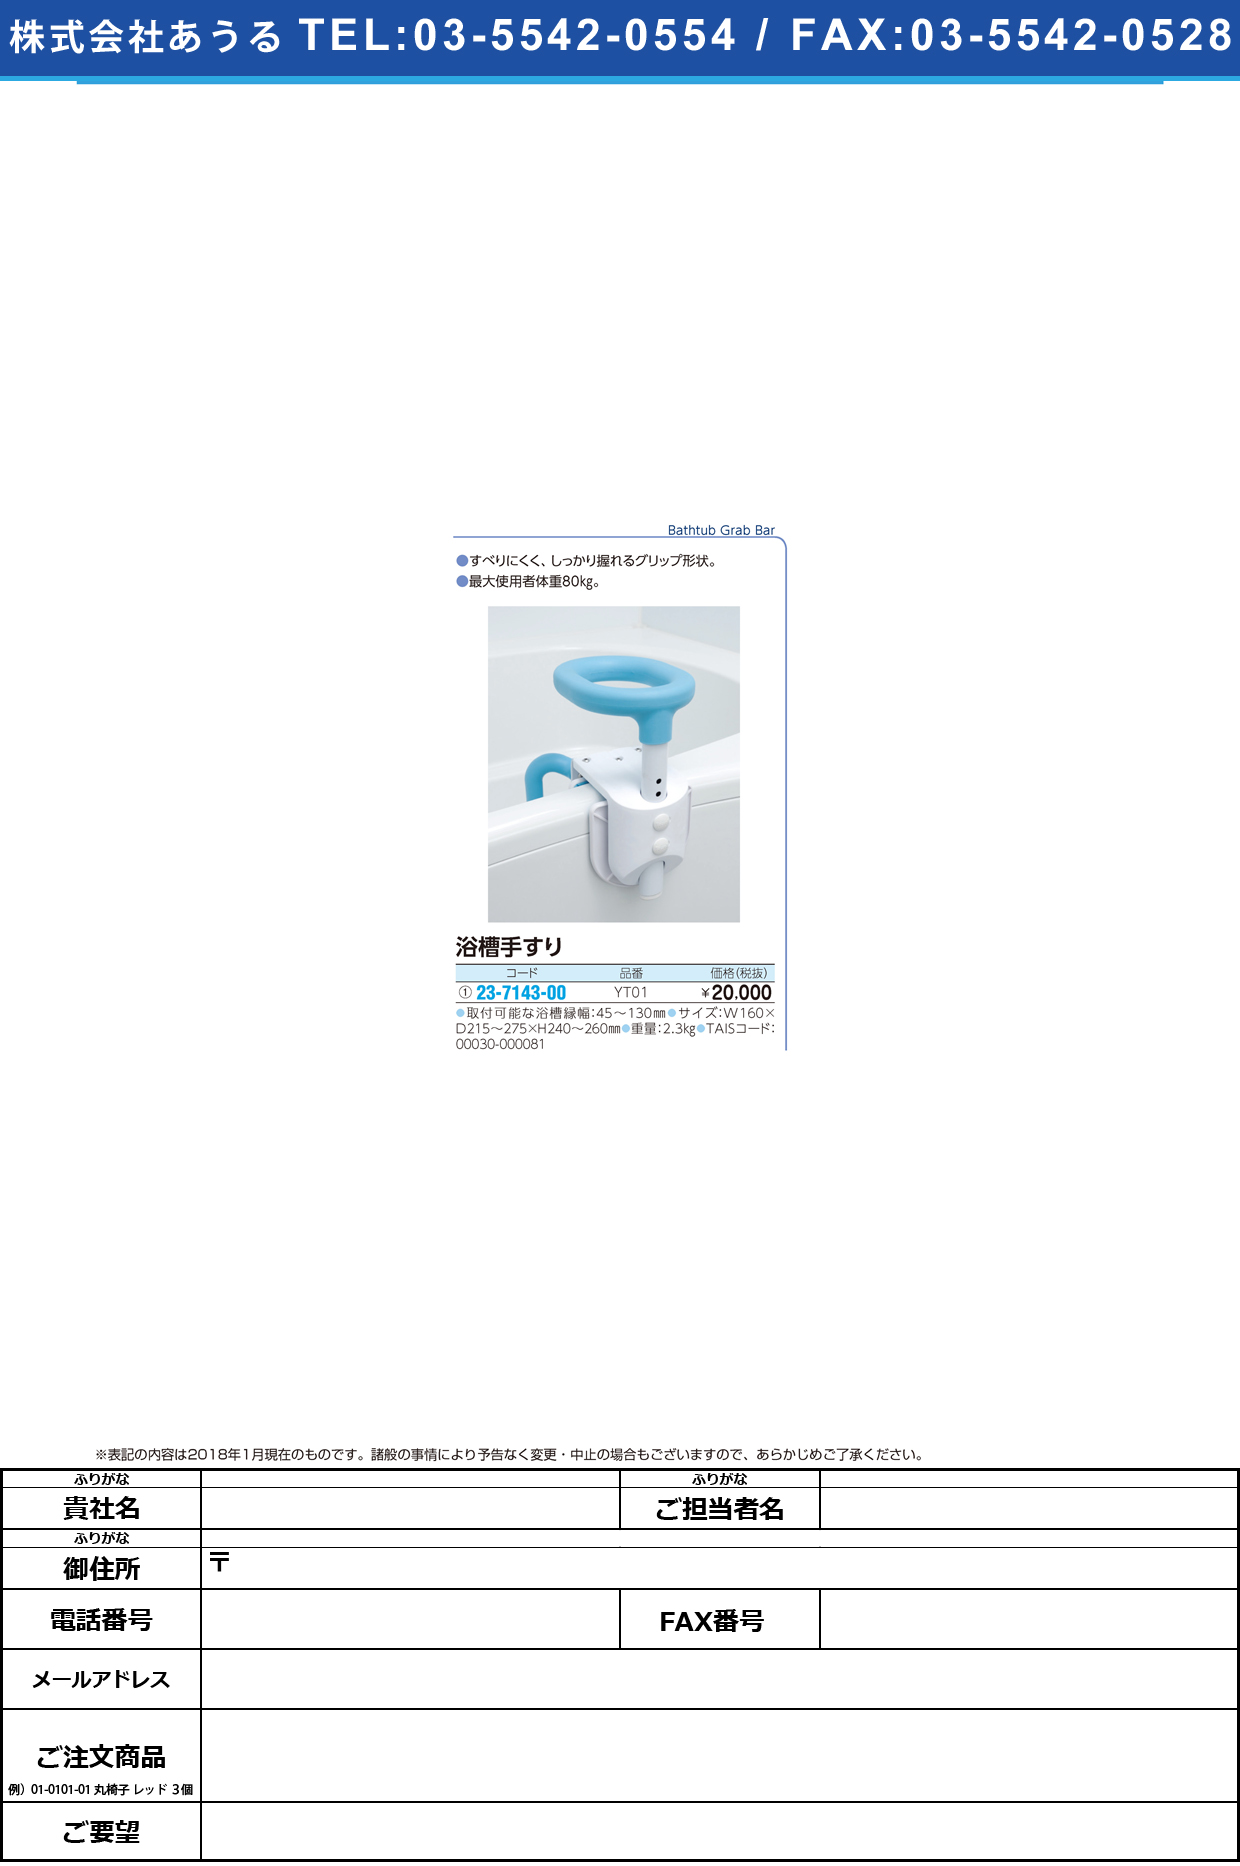 (23-7143-00)コンパクト浴槽手すり YT01 ｺﾝﾊﾟｸﾄﾖｸｿｳﾃｽﾘ【1台単位】【2019年カタログ商品】